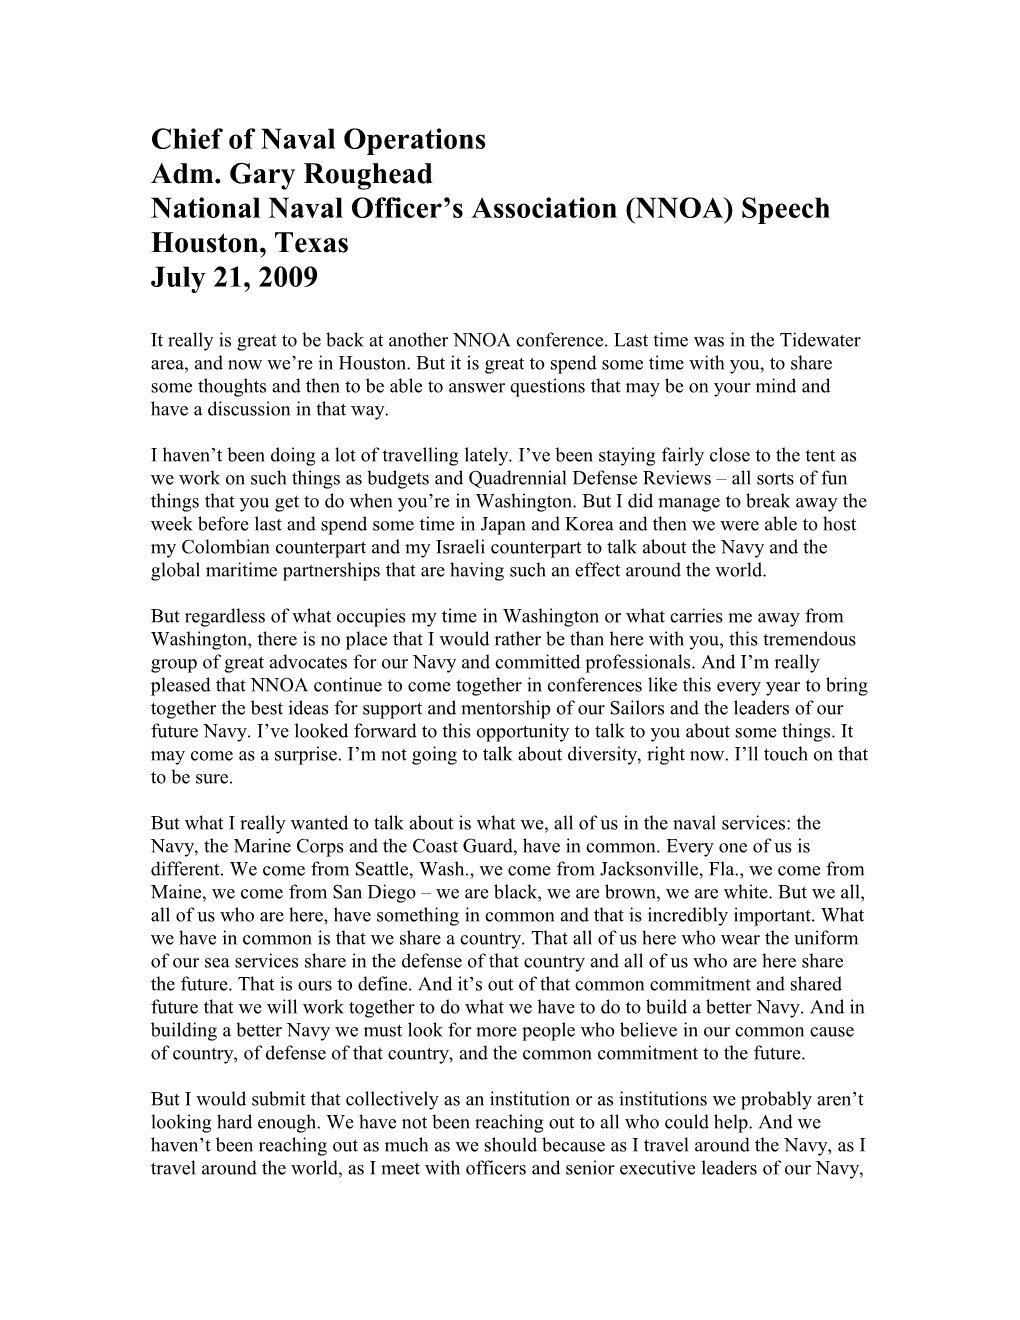 National Naval Officer S Association (NNOA) Speech